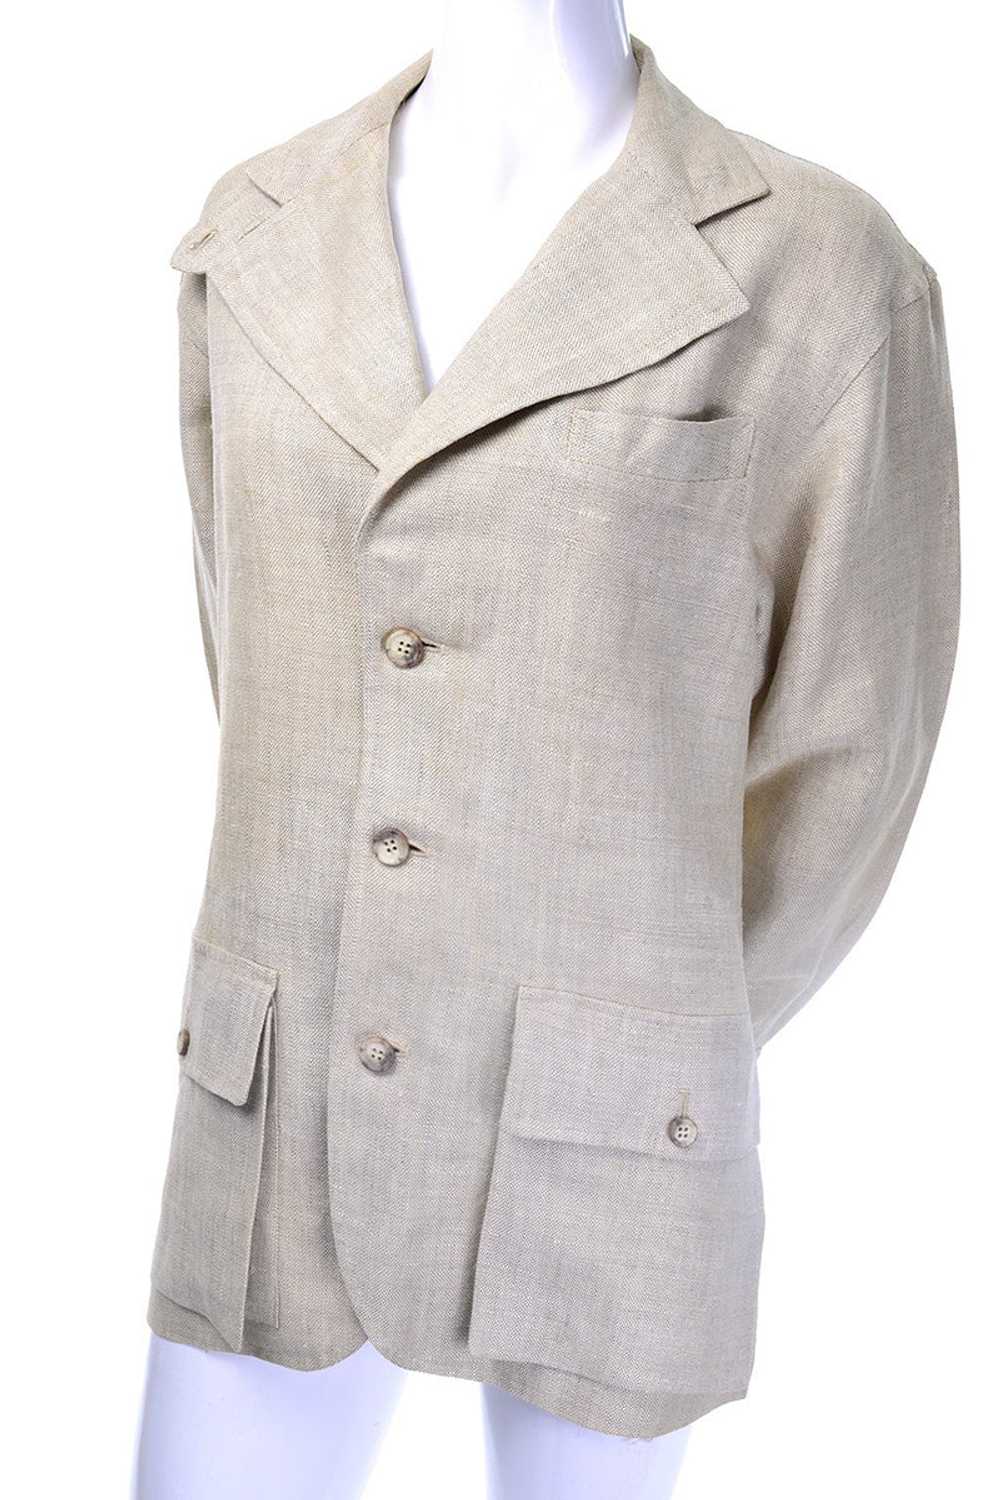 Ralph Lauren Henri Bendel Vintage Linen Jacket - image 2